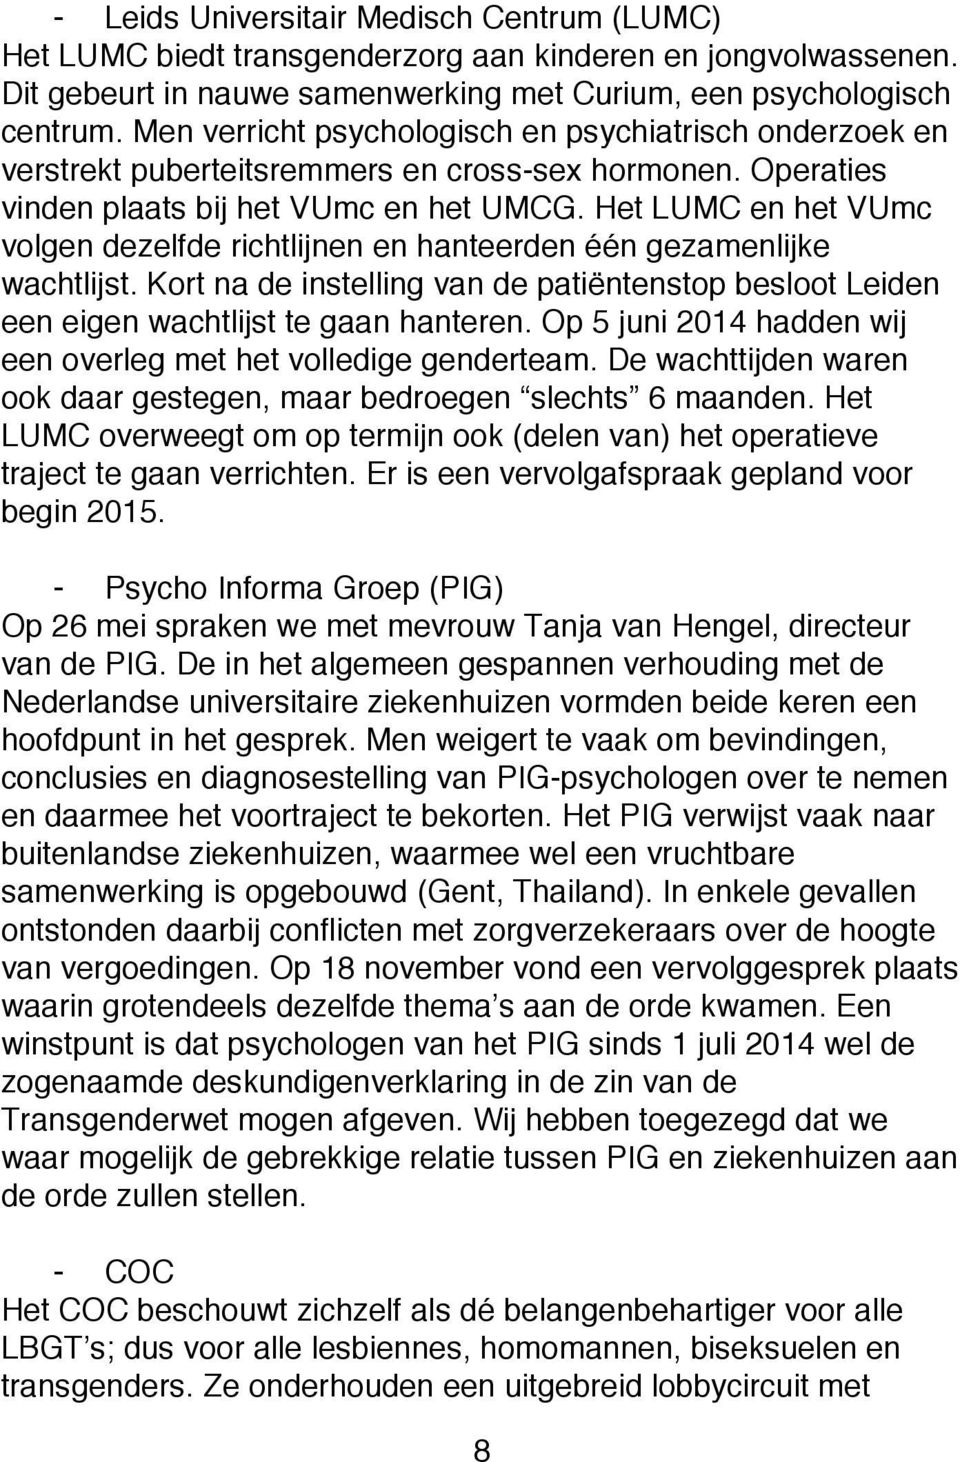 Het LUMC en het VUmc volgen dezelfde richtlijnen en hanteerden één gezamenlijke wachtlijst. Kort na de instelling van de patiëntenstop besloot Leiden een eigen wachtlijst te gaan hanteren.